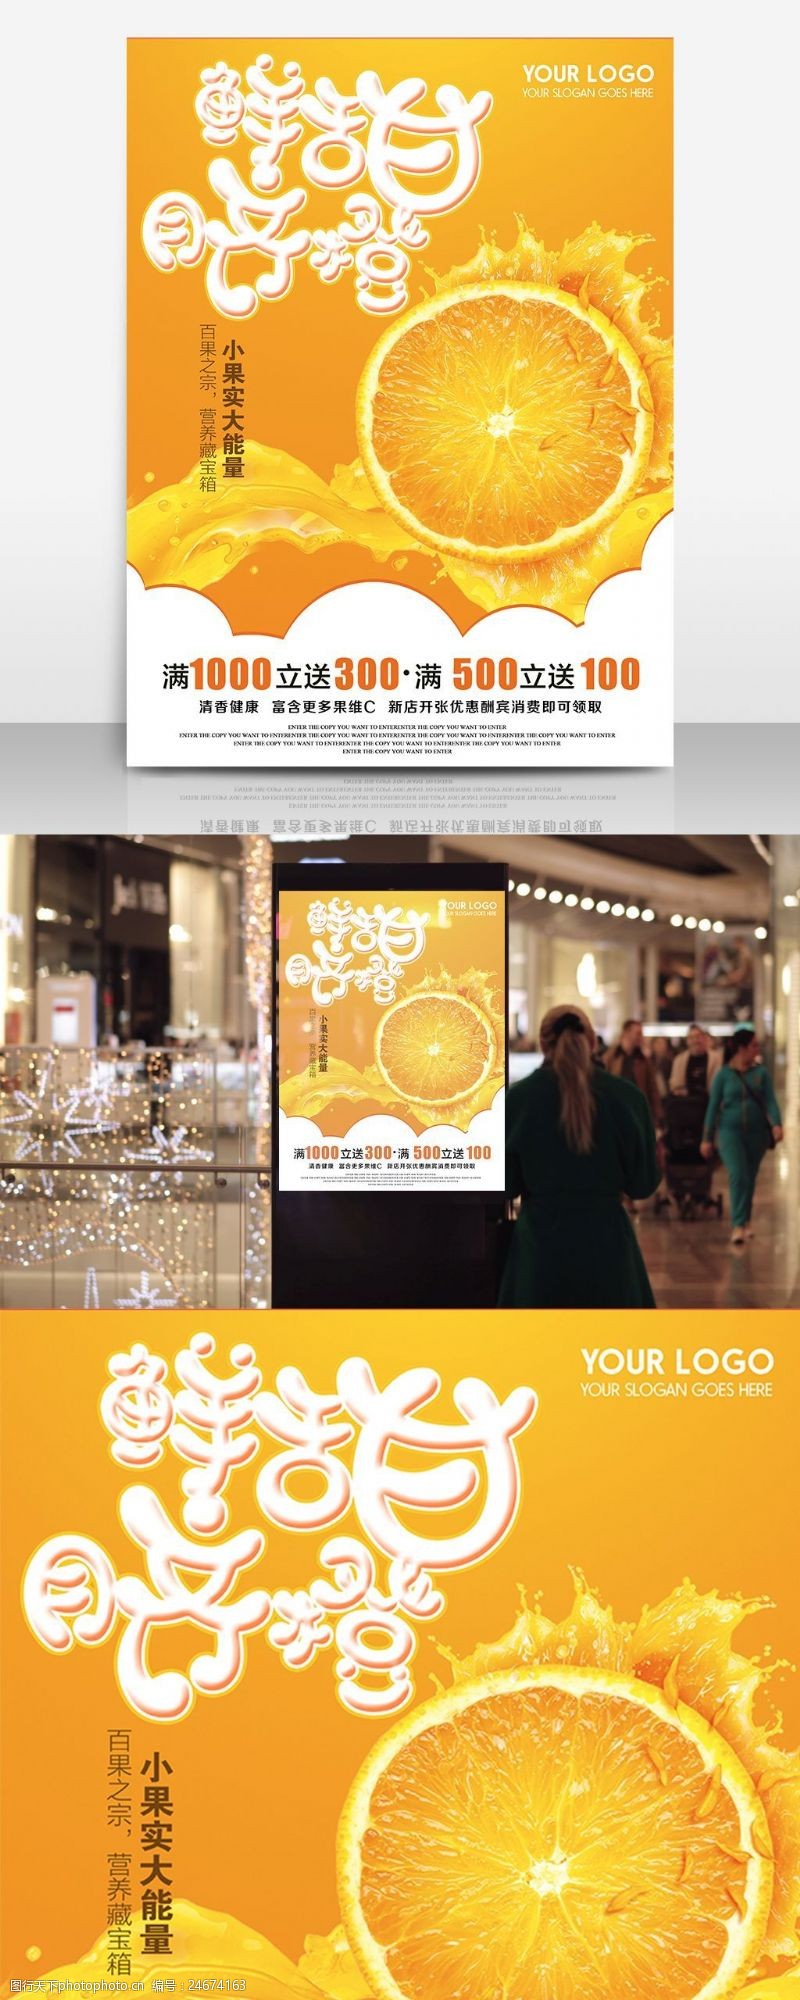 鲜甜脐橙新店开张促销商业海报水果海报